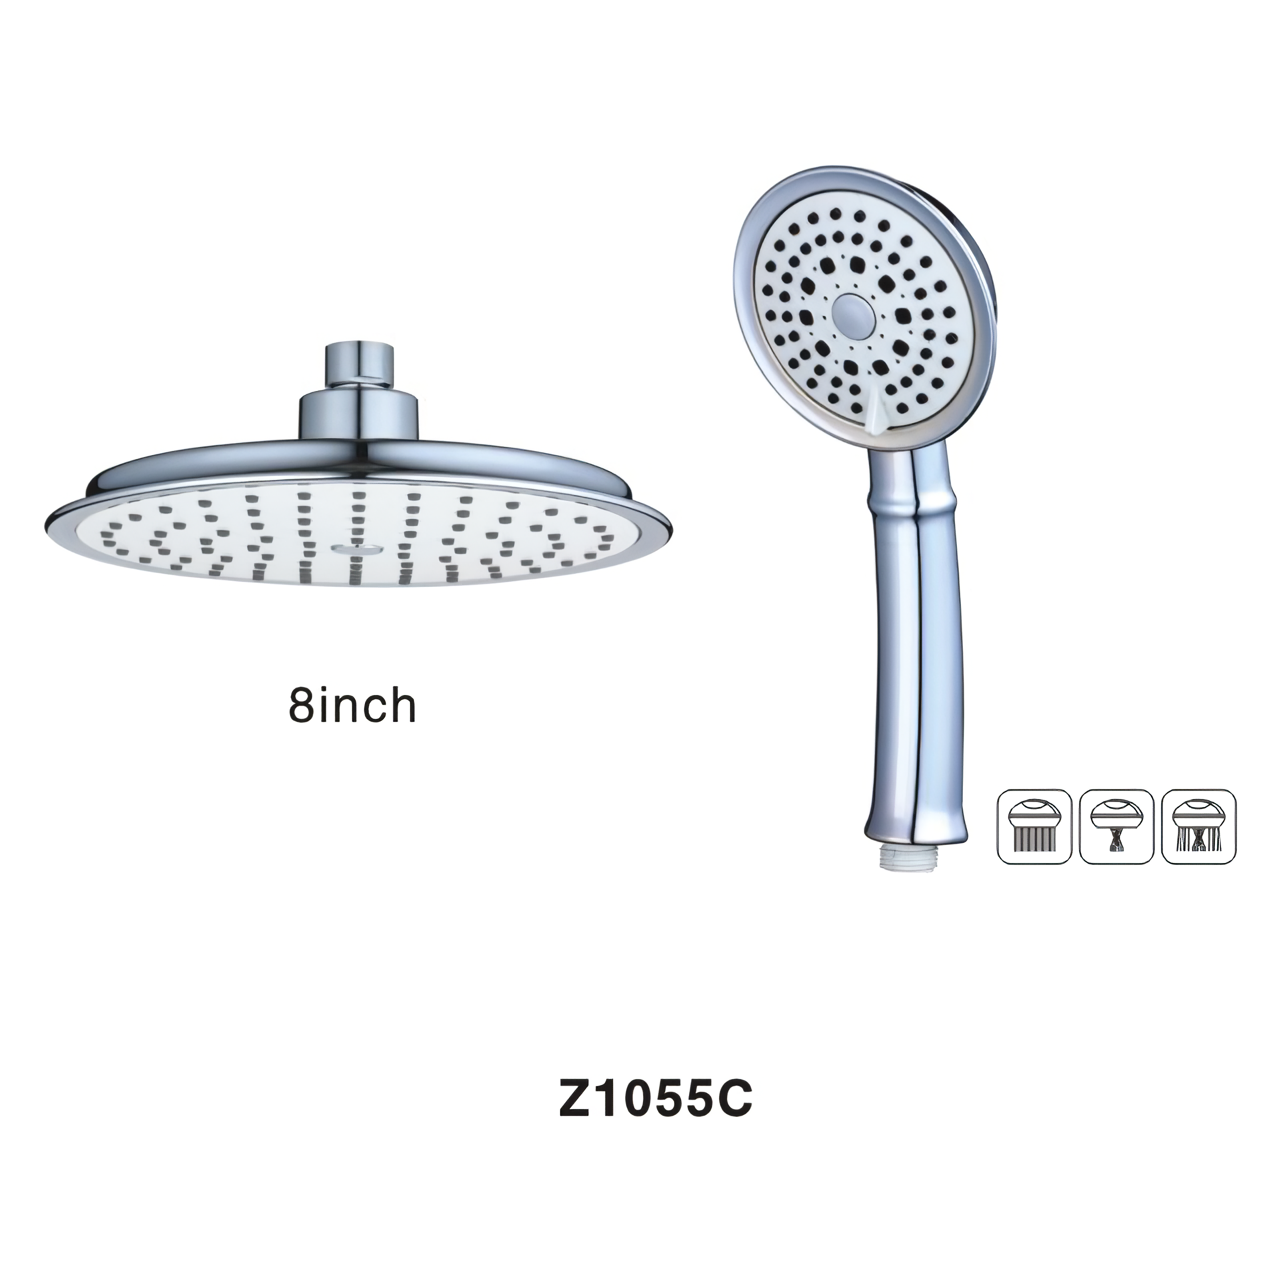 浴室のシャワーヘッドのデザインは節水活動にどのように貢献できますか?